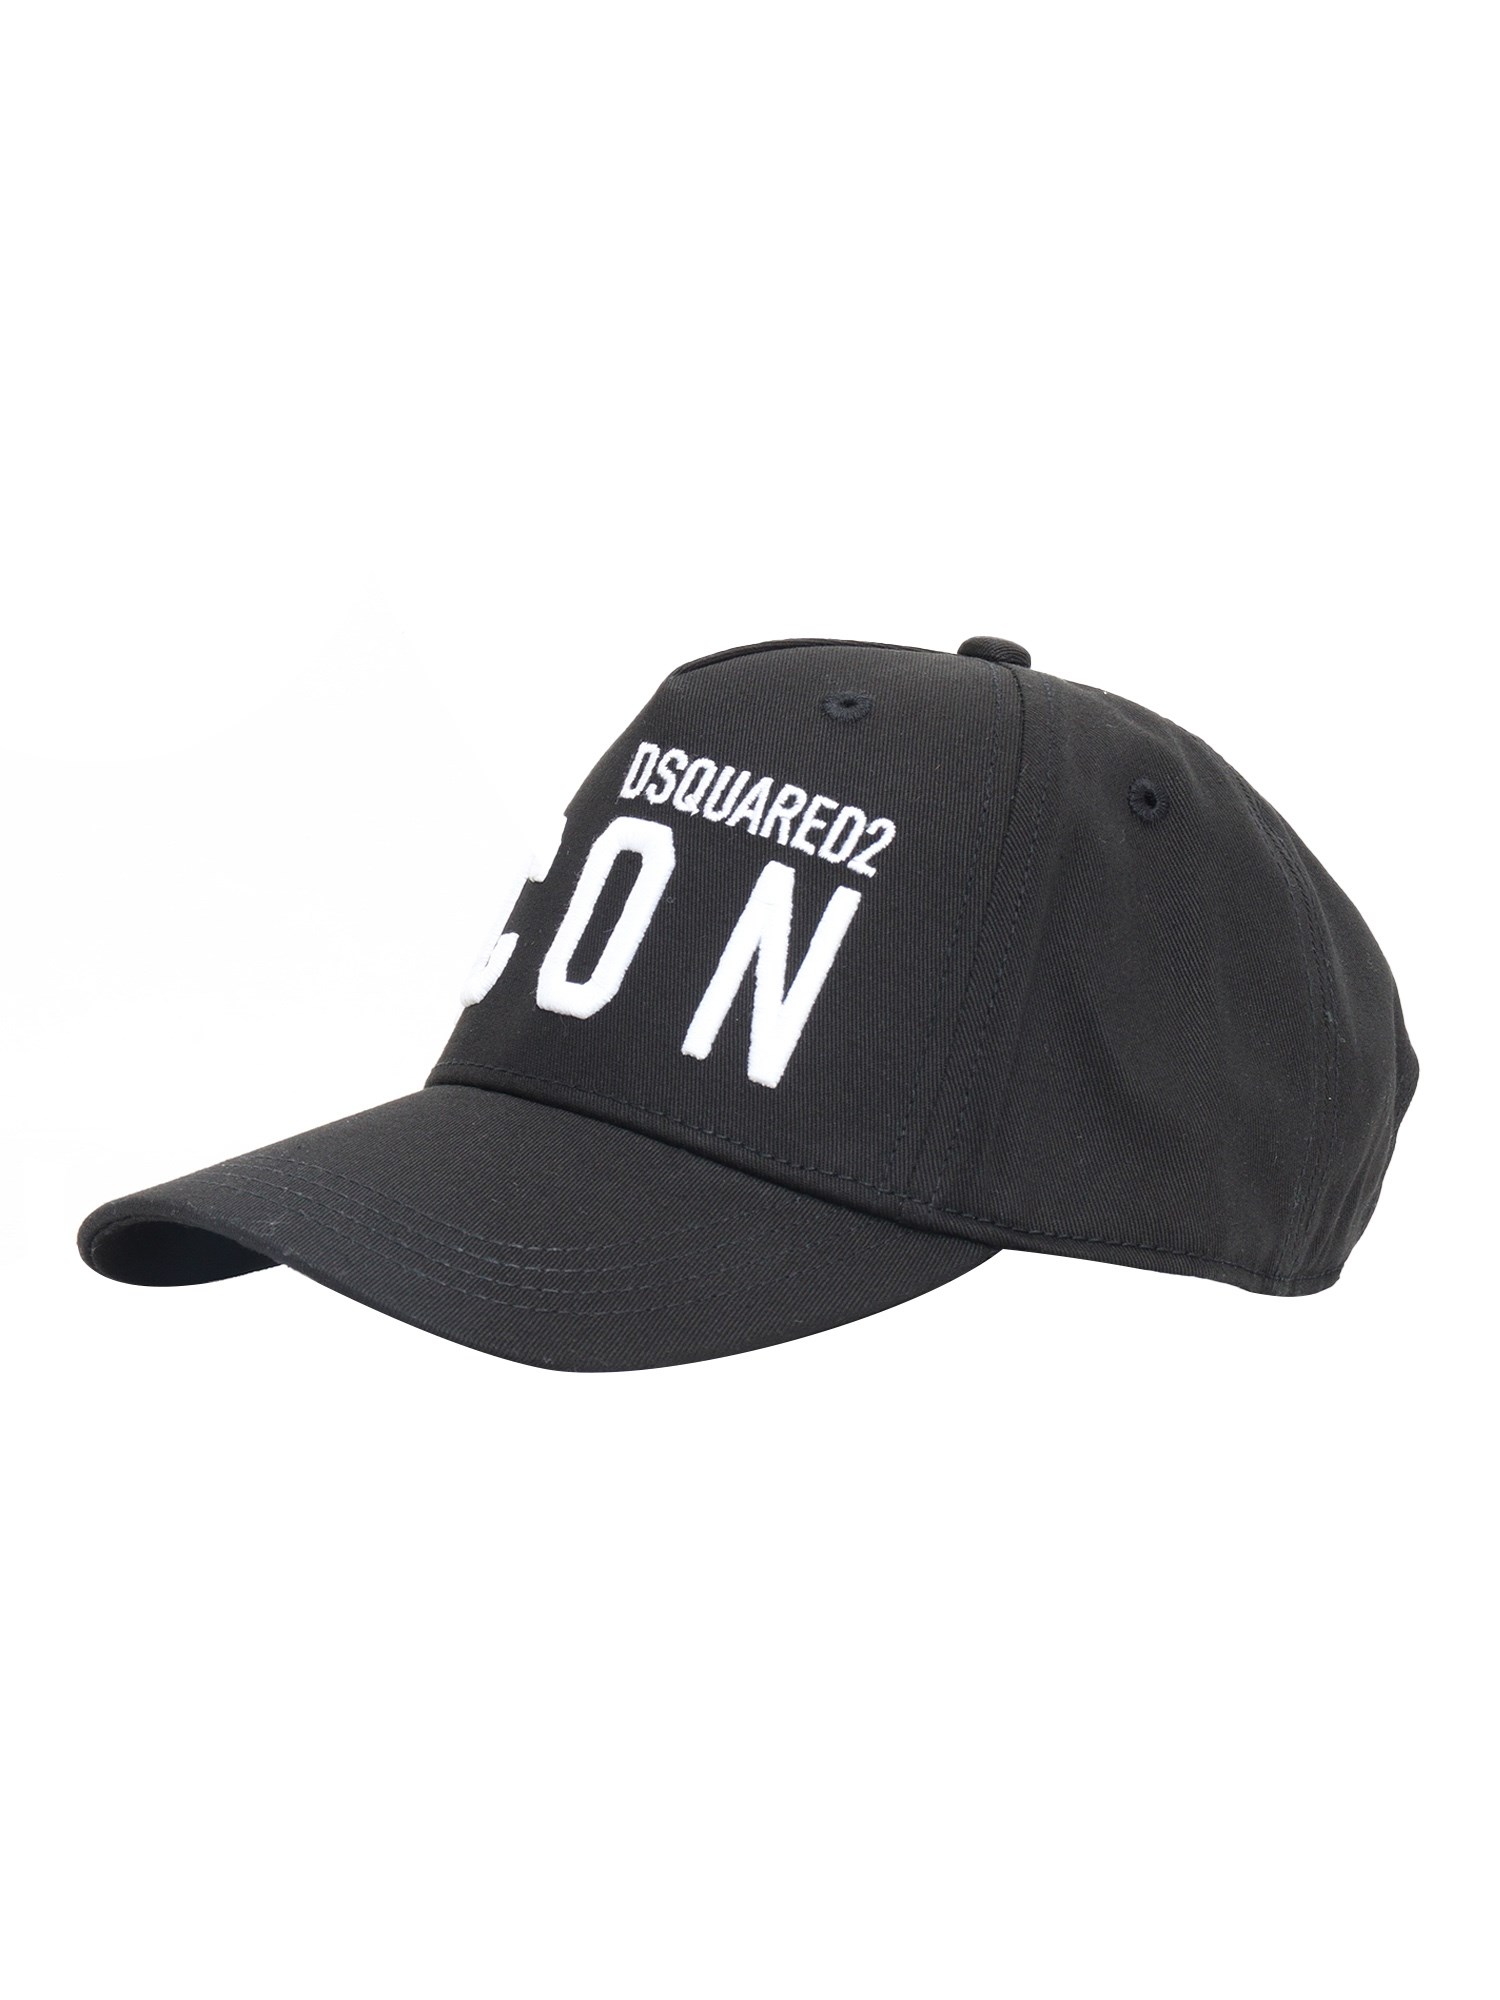 D-squared2 Black Hat In Multi